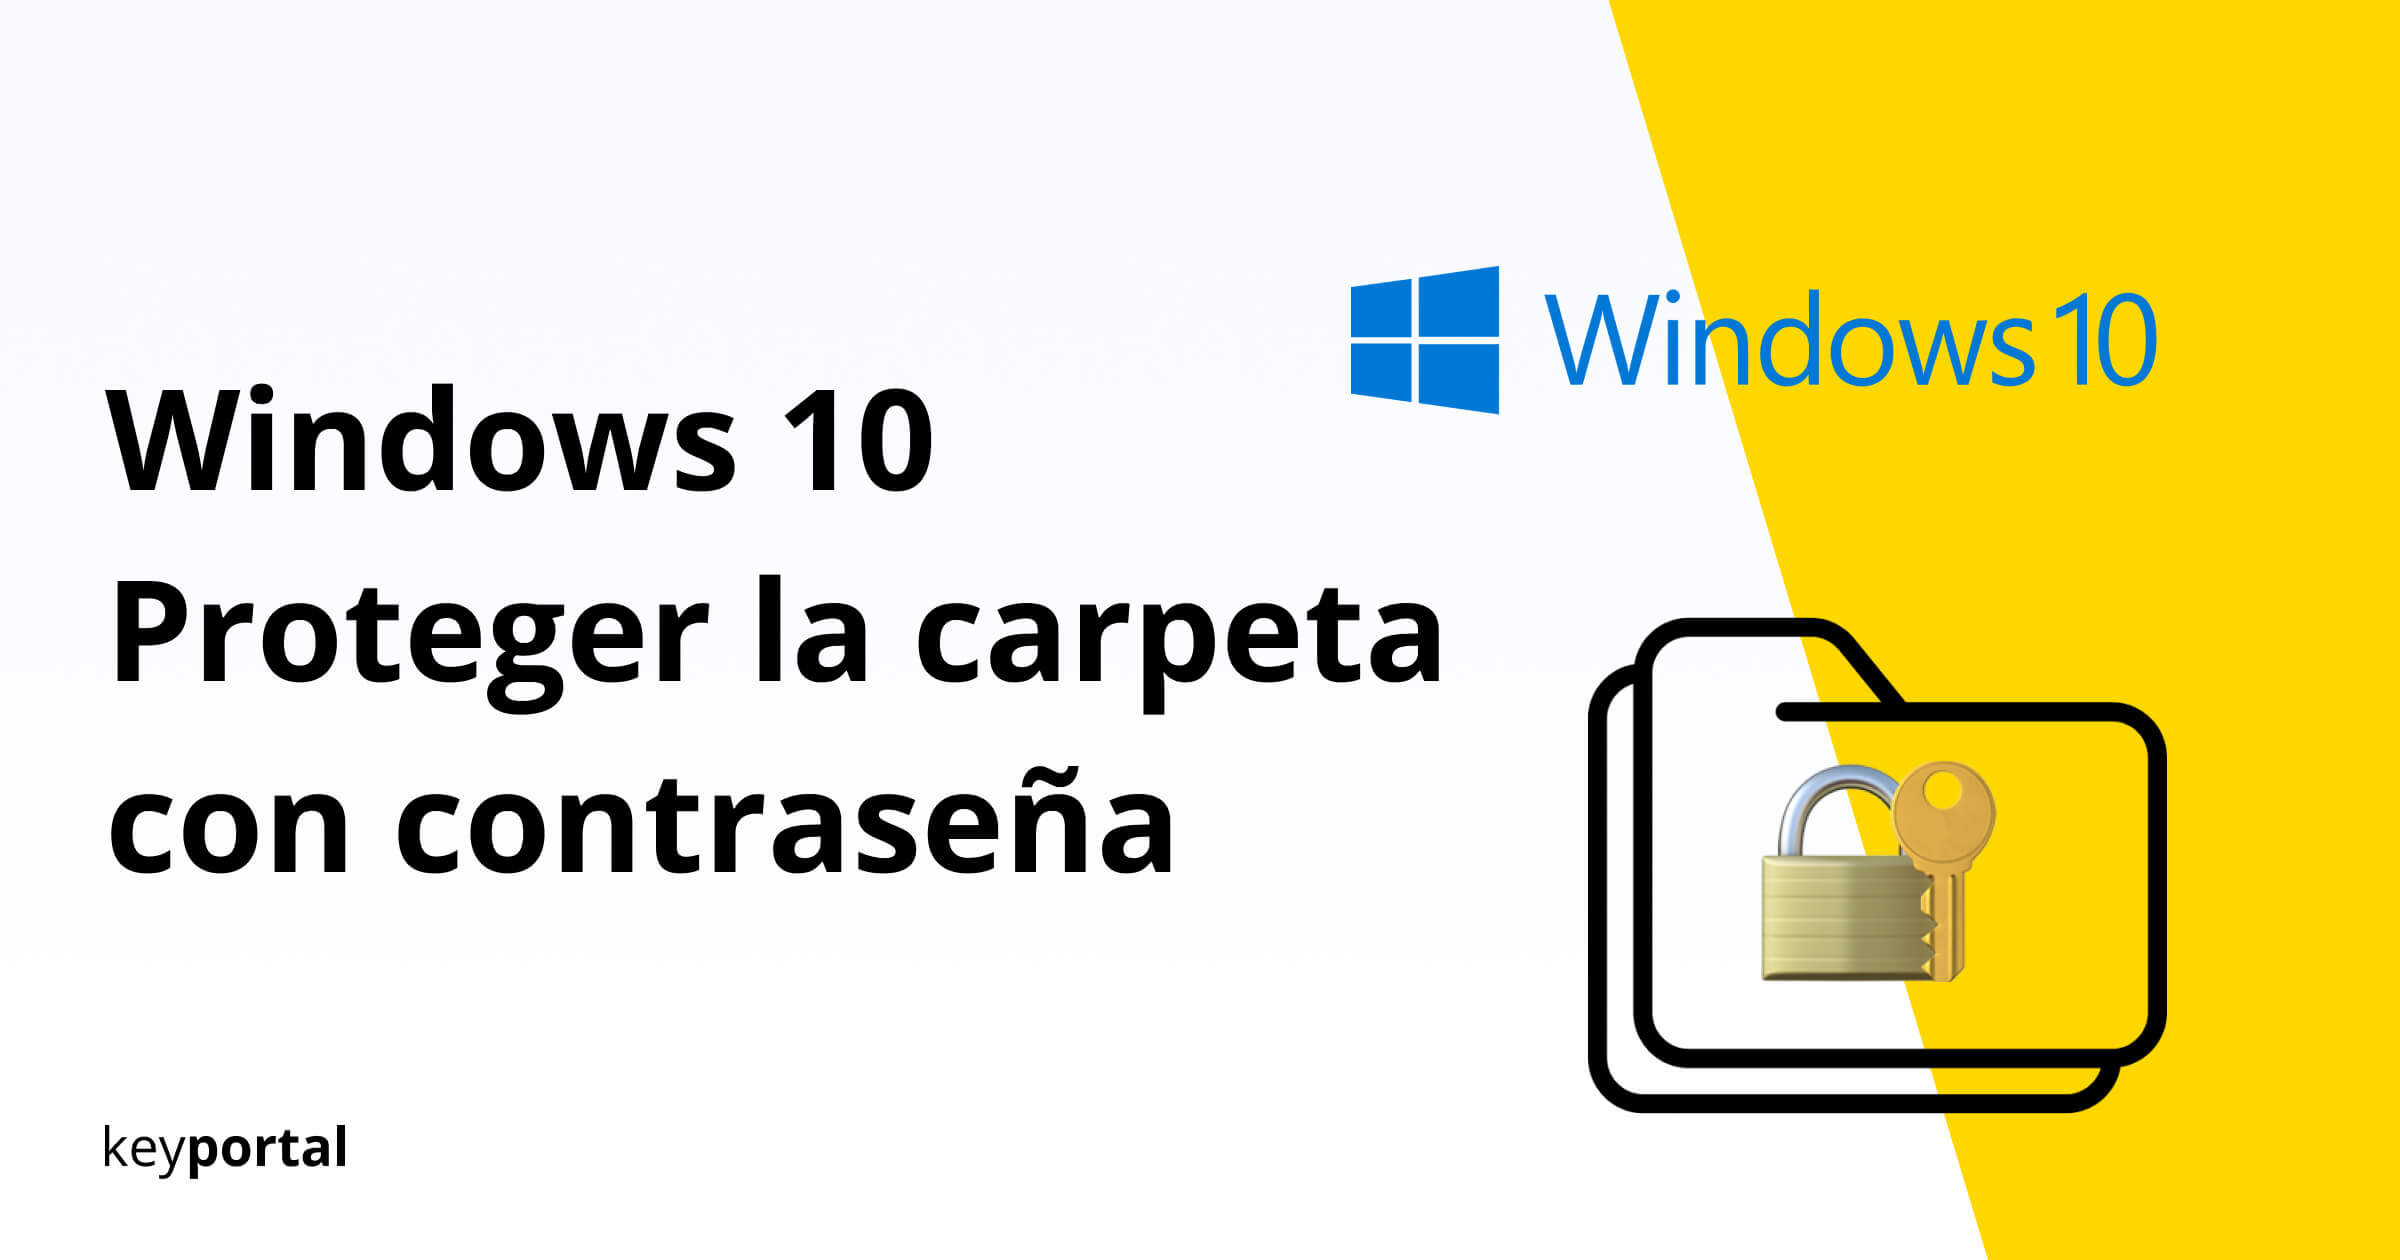 sí mismo Atento Pompeya Proteger la carpeta de Windows 10 con contraseña - keyportal.es